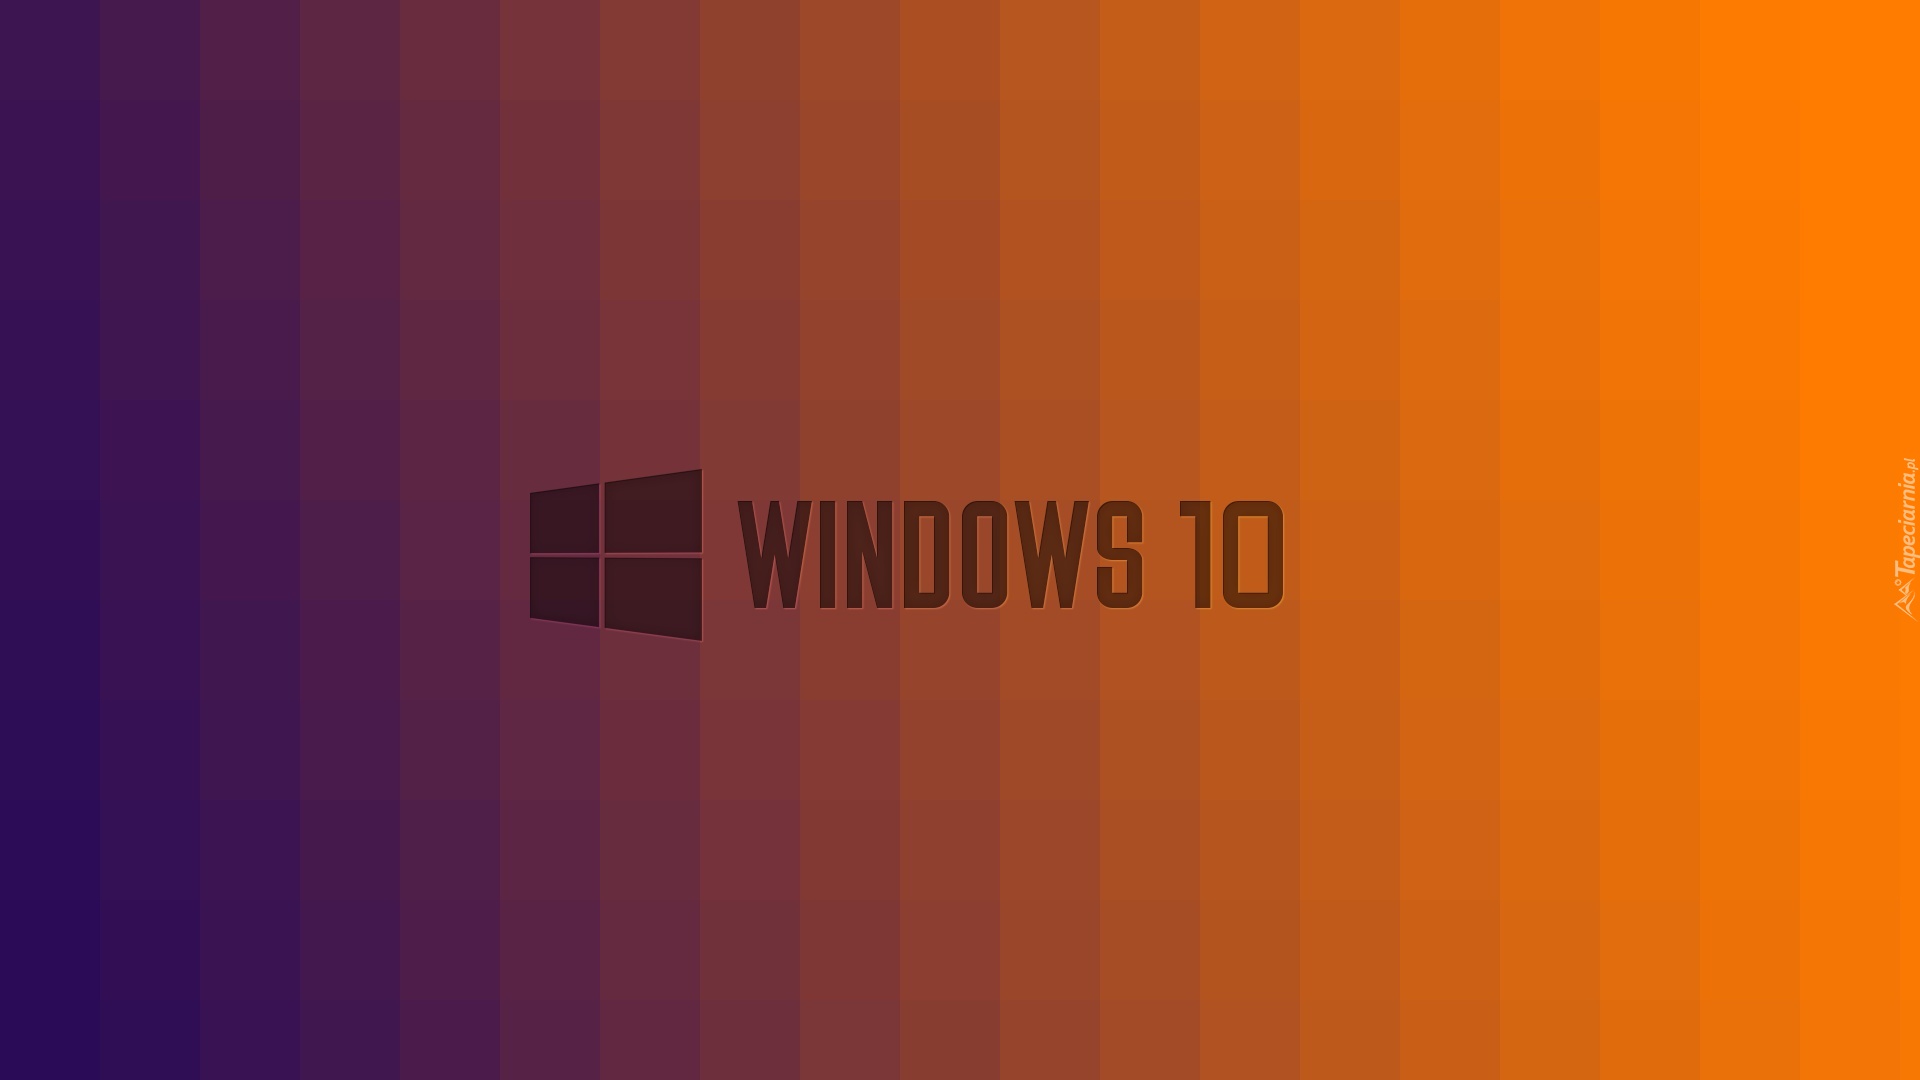 Windows 10, Logo, Czarny, Pomarańczowy